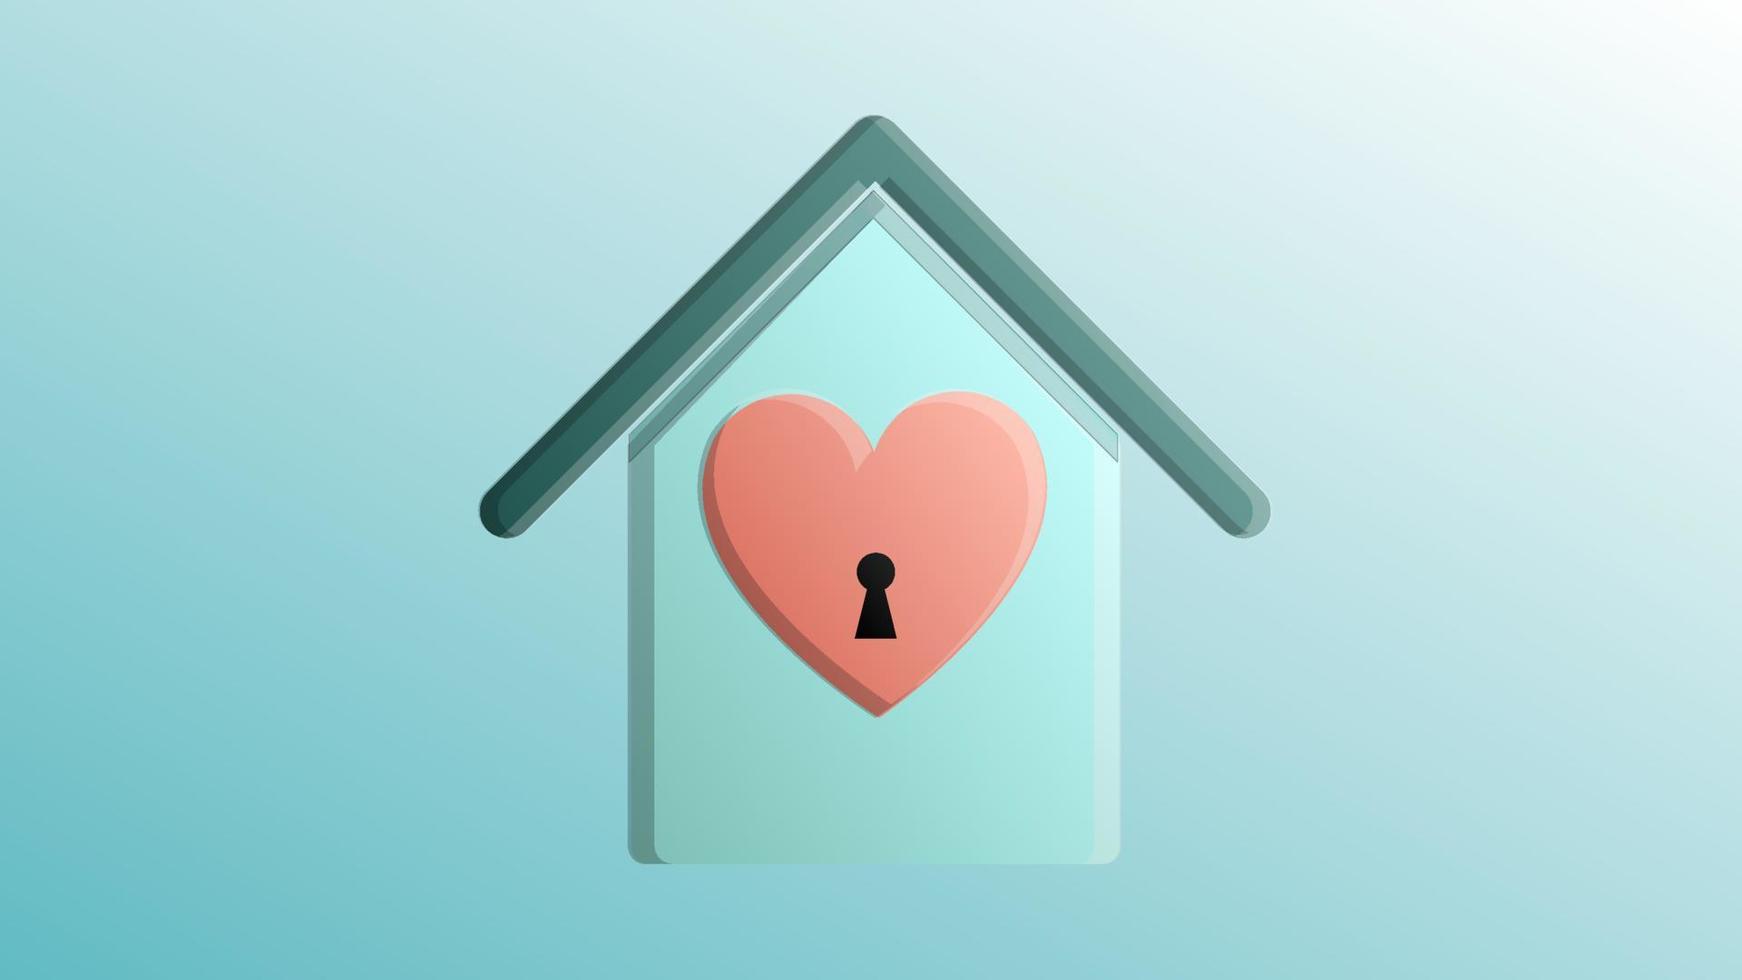 schöne festliche rot mit blauer Liebe fröhliches Haus mit Herz für eine Grußkarte zum Valentinstag, Valentinstag auf blauem Hintergrund vektor